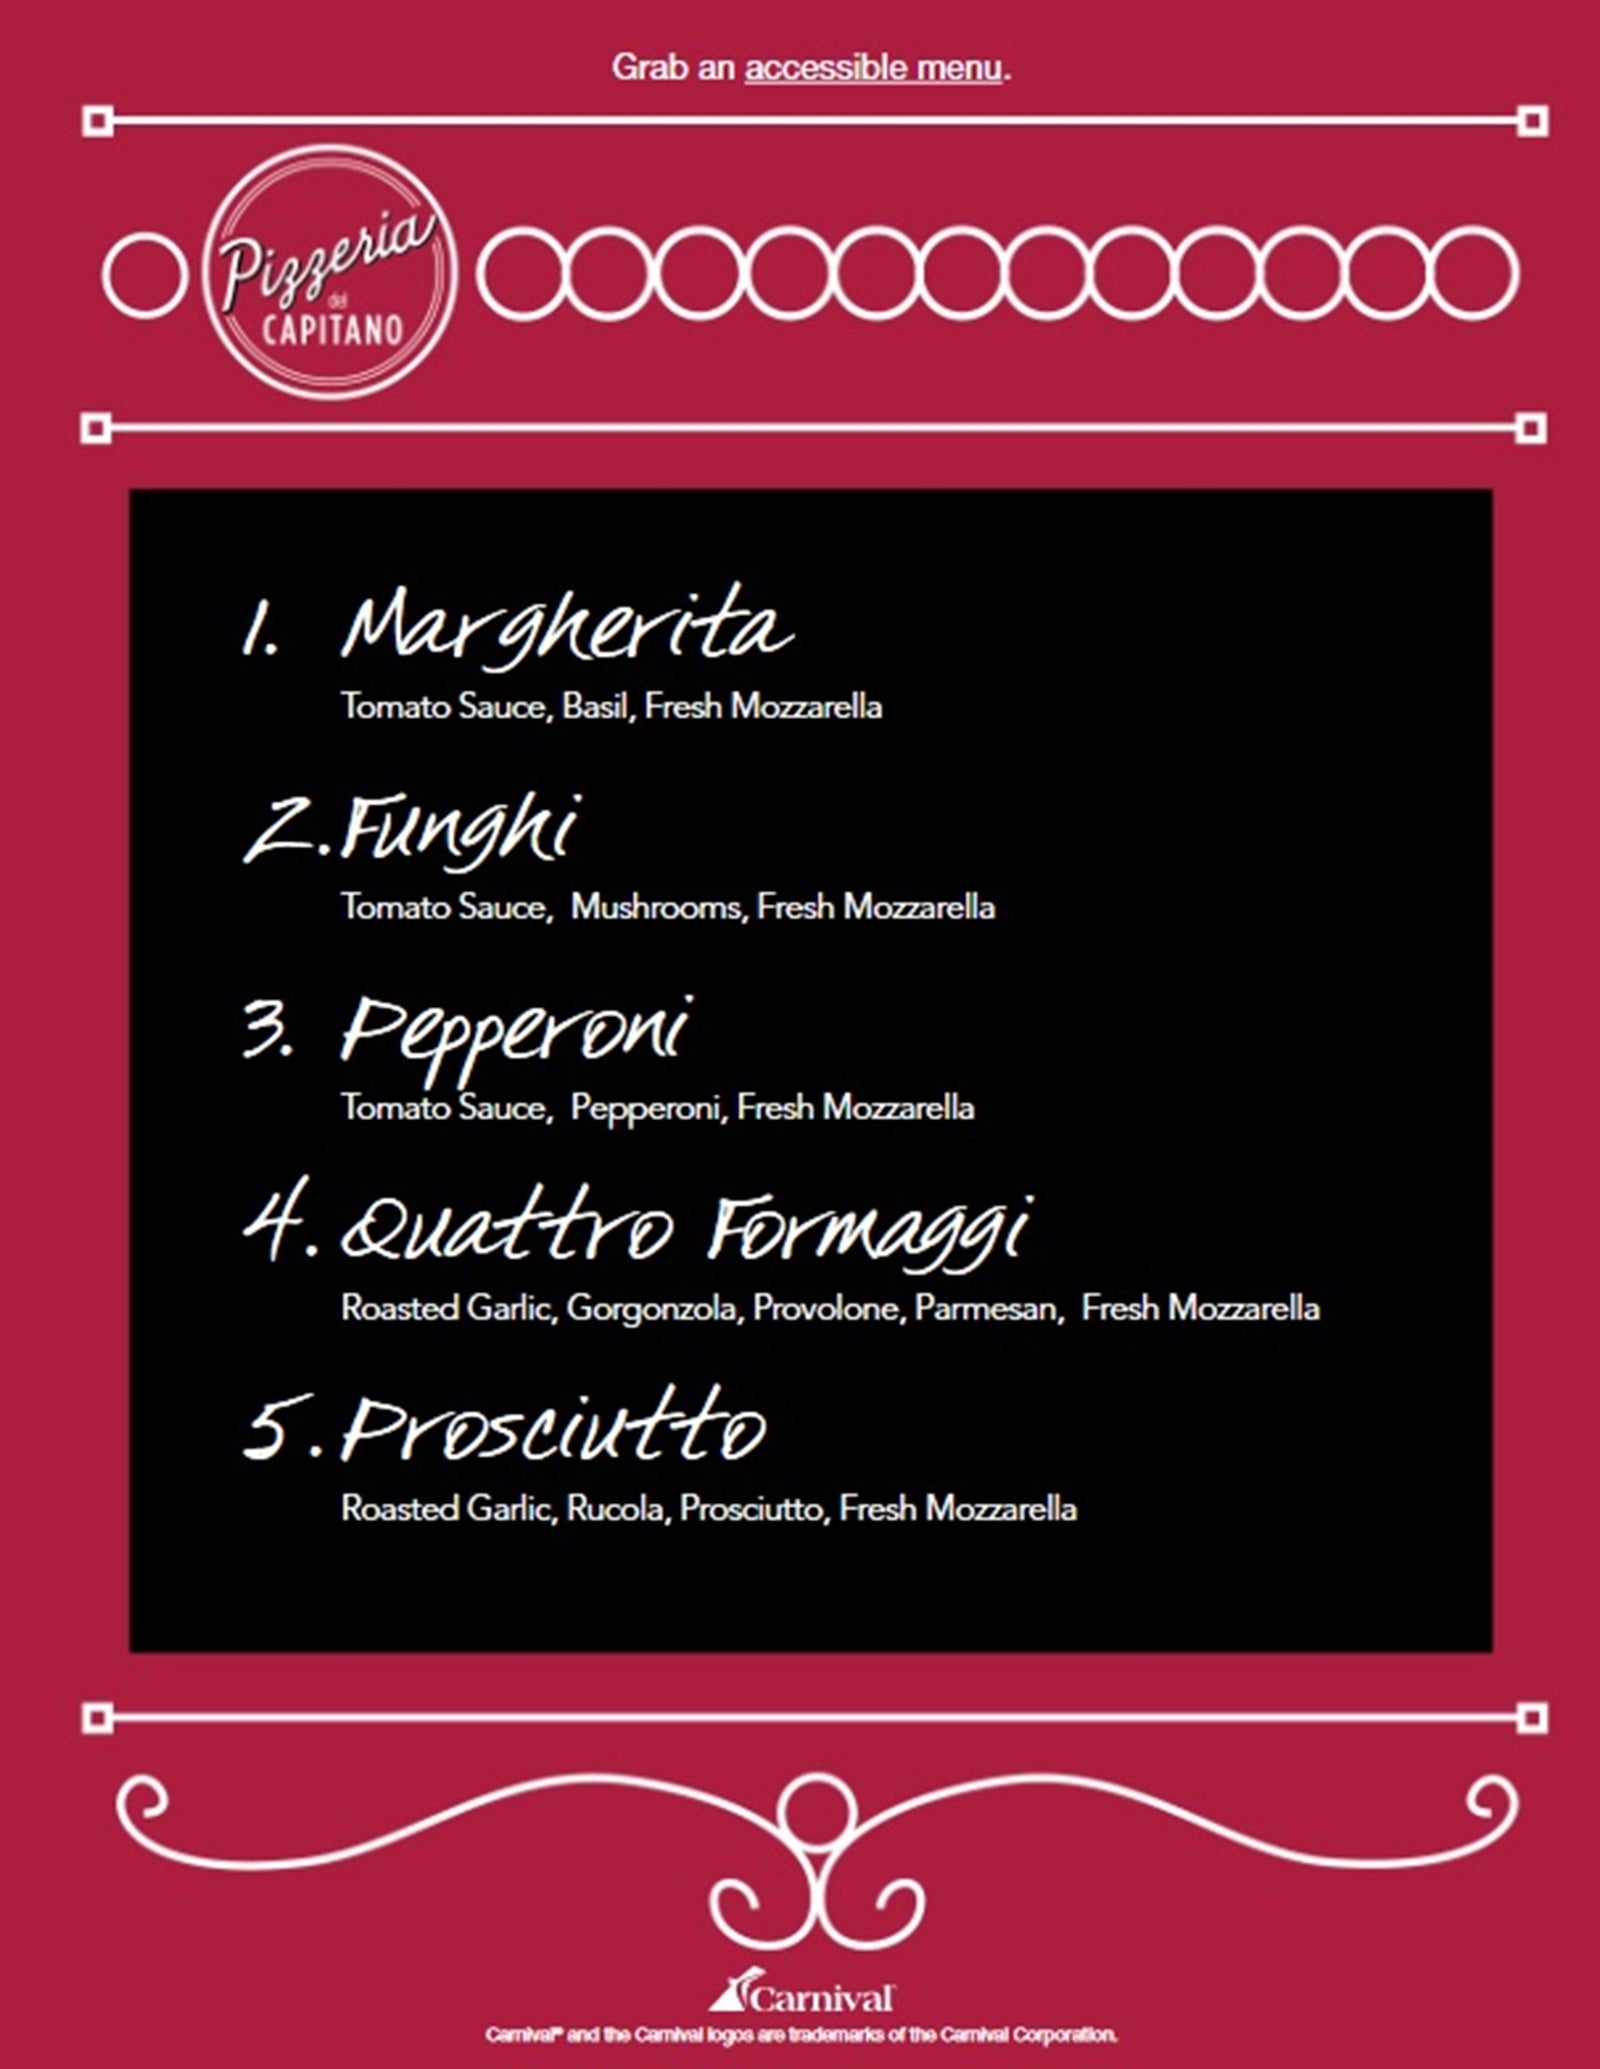 A menu from Carnival's Pizzeria del Capitano pizza restaurant